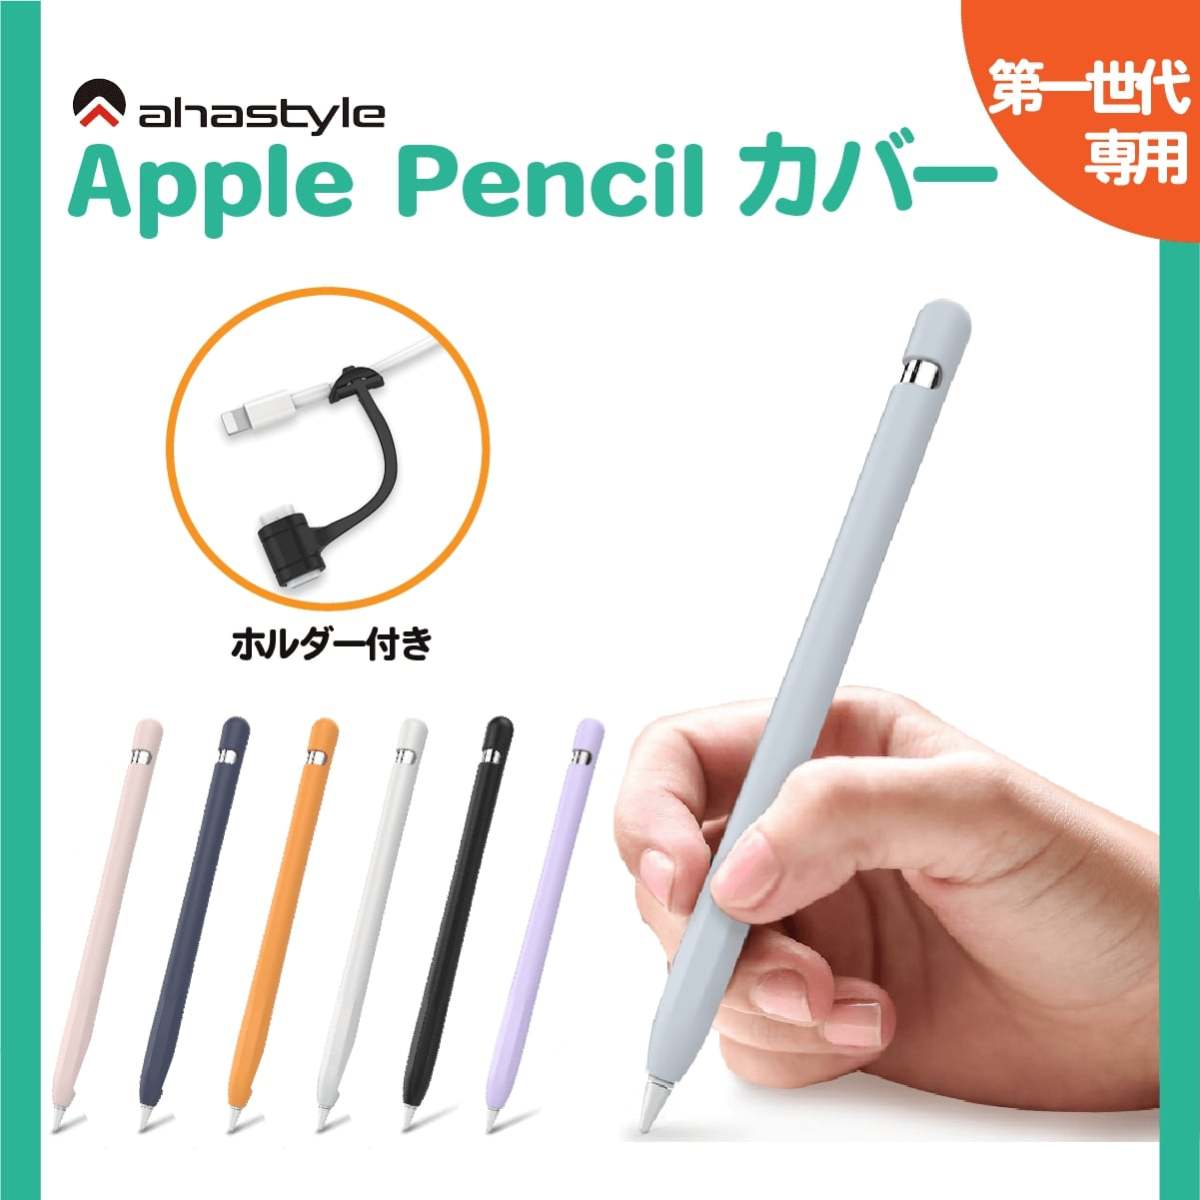 Apple Pencil no. 1 поколение кейс покрытие в одном корпусе высокое качество силиконовый колпачок утерян предотвращение вращение .. предотвращение рукоятка предотвращение скольжения симпатичный модный ipad авторучка порог двери кейс AHAStyle